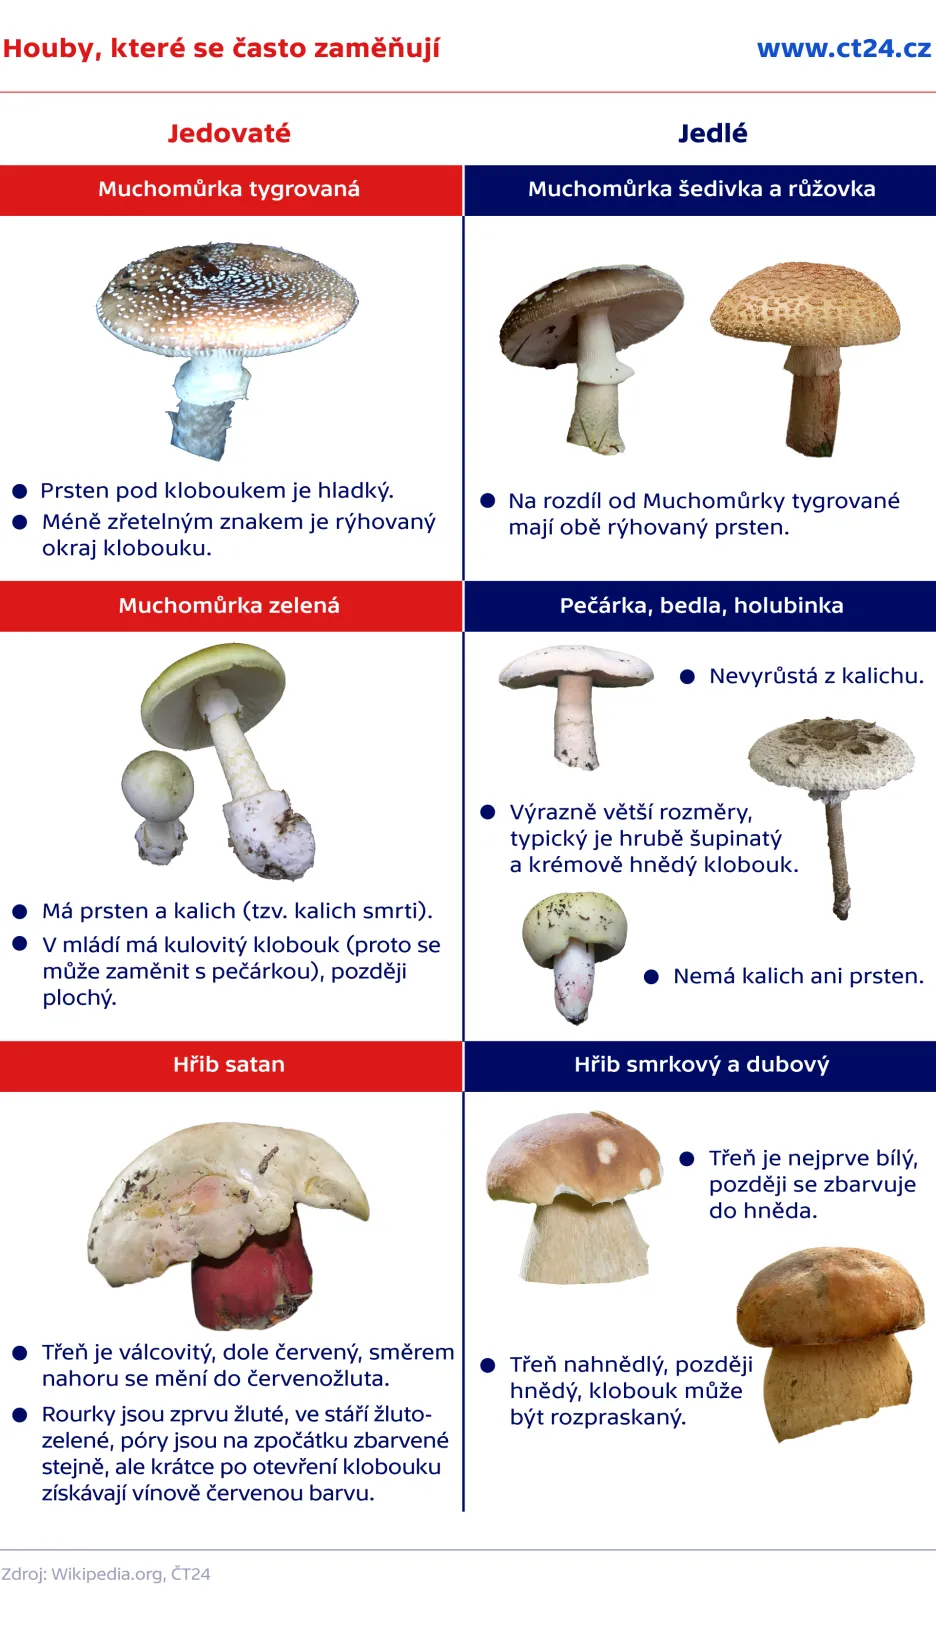 Které houby jsou nejedlé?